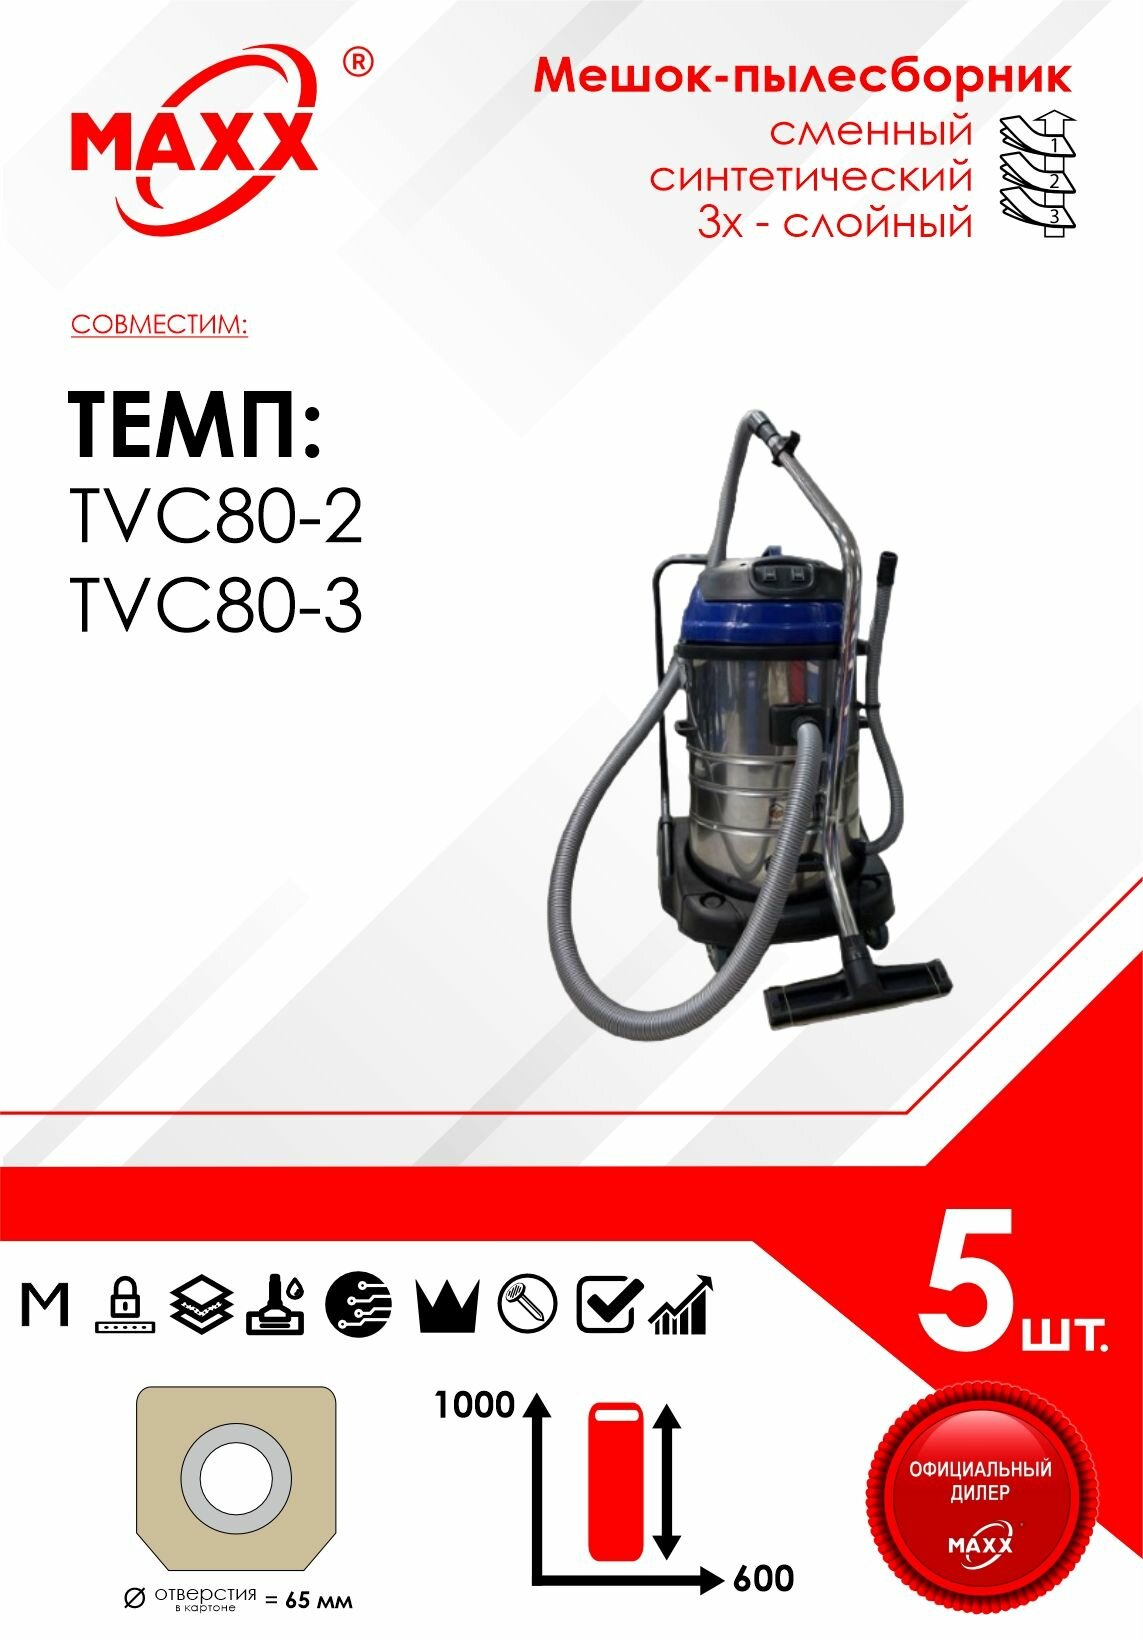 Мешок - пылесборник 5 шт. для пылесоса TEMP TVC80-2, TEMP TVC80-3